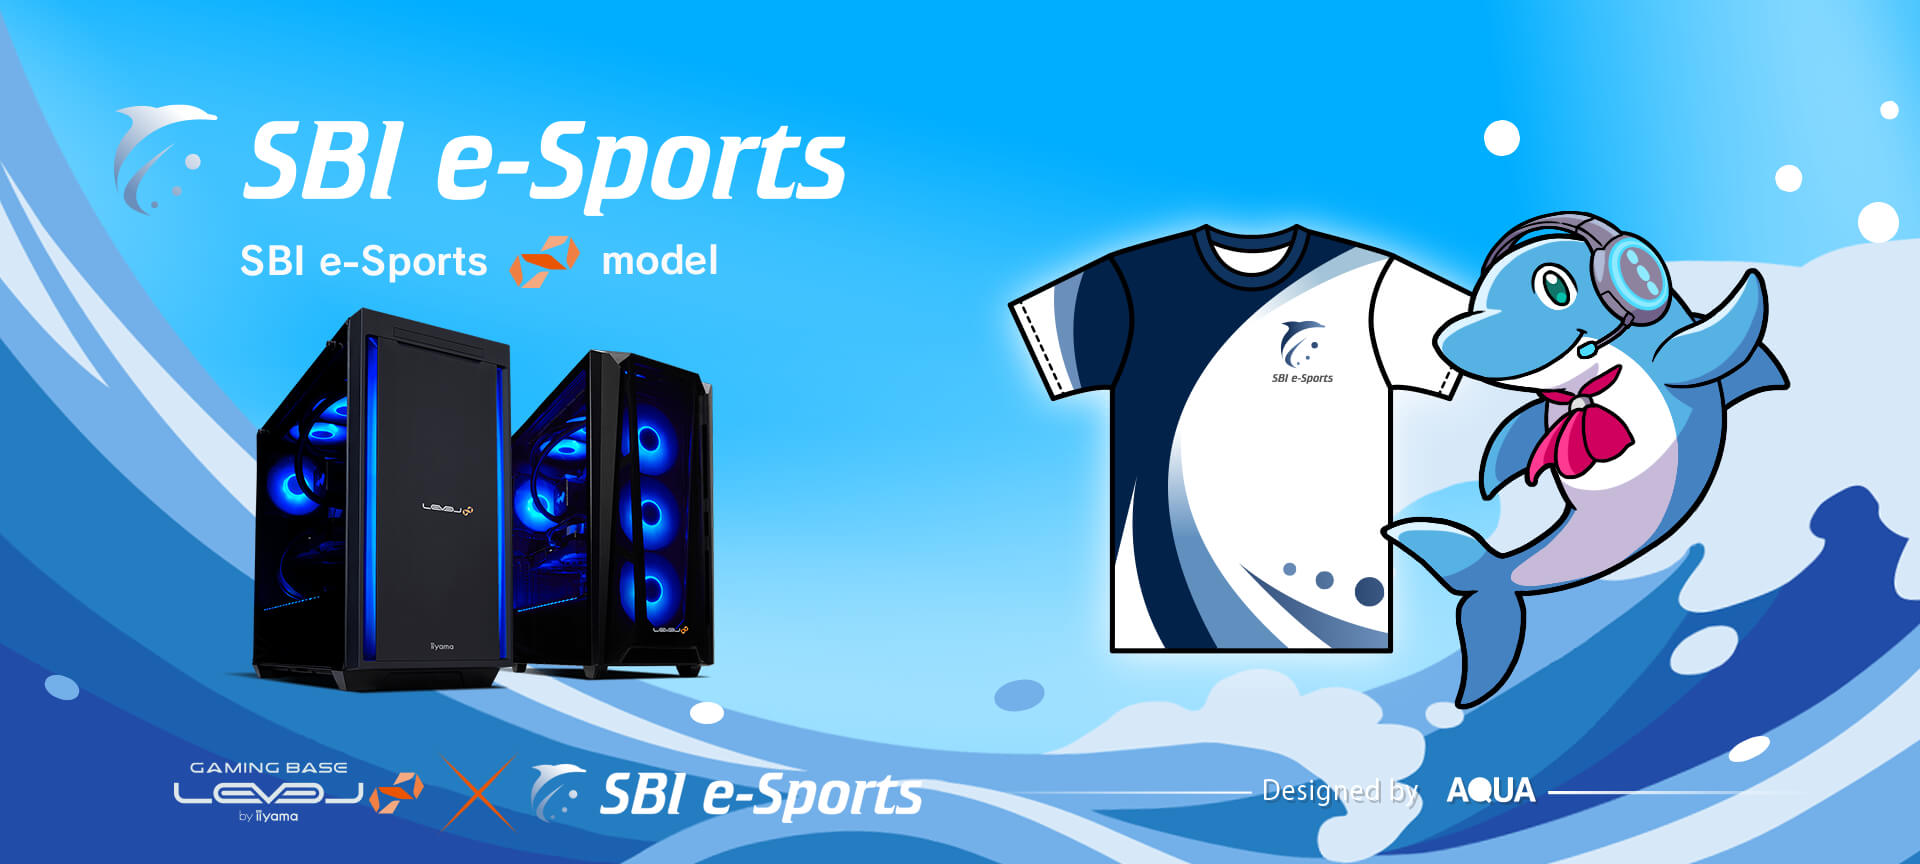 SBI e-Sportsは、パソコン工房の「Level∞」とコラボゲーミングPC